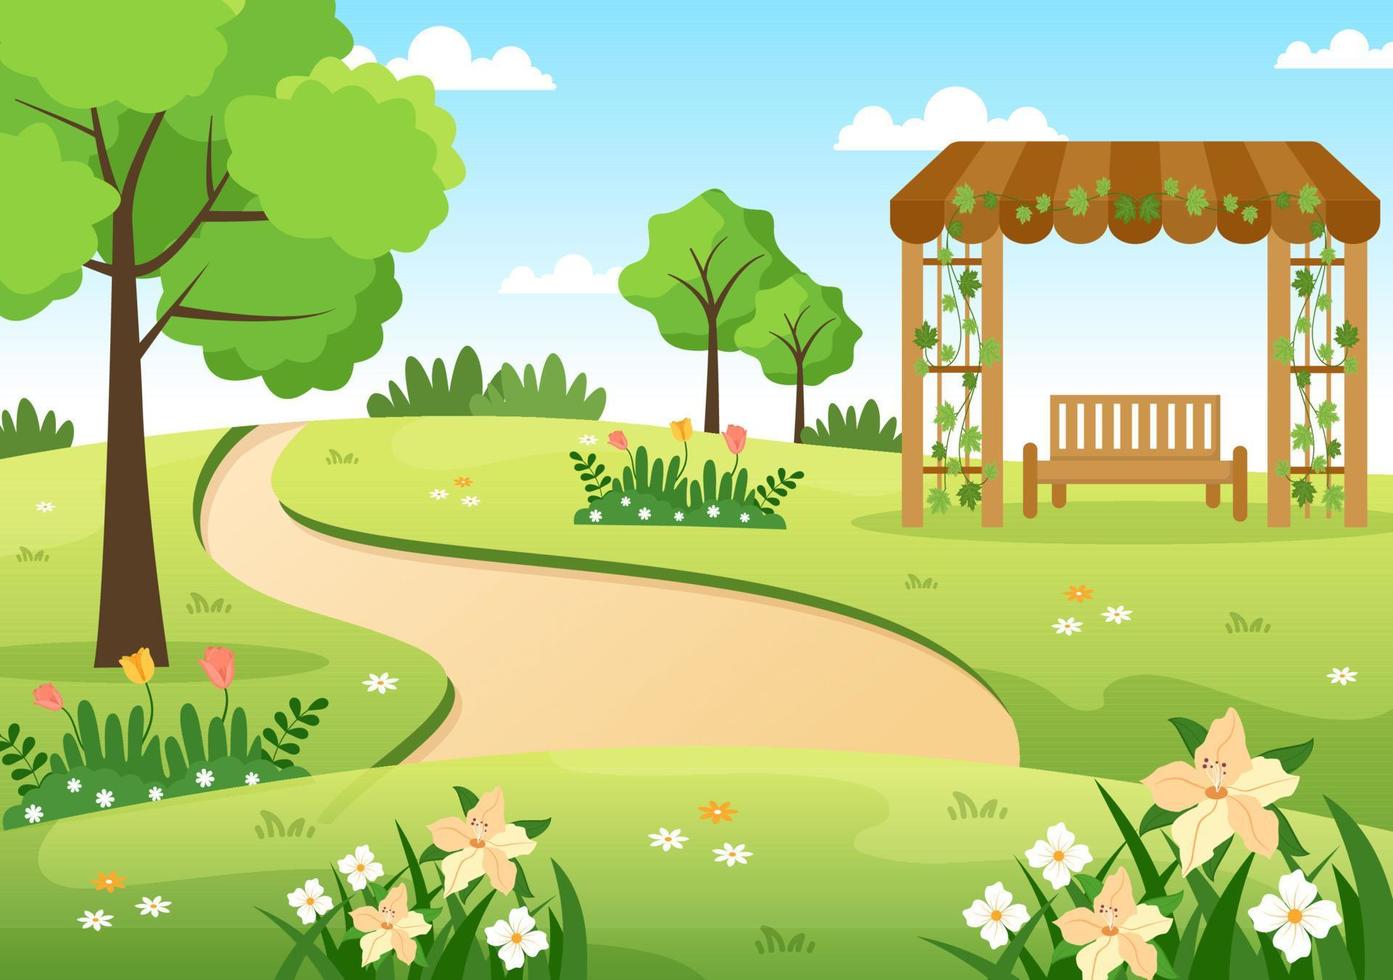 schöne gartenkarikatur-hintergrundillustration mit einer landschaftsnatur der pflanze, der blumen, des baums und des grünen grases in der flachen designart vektor